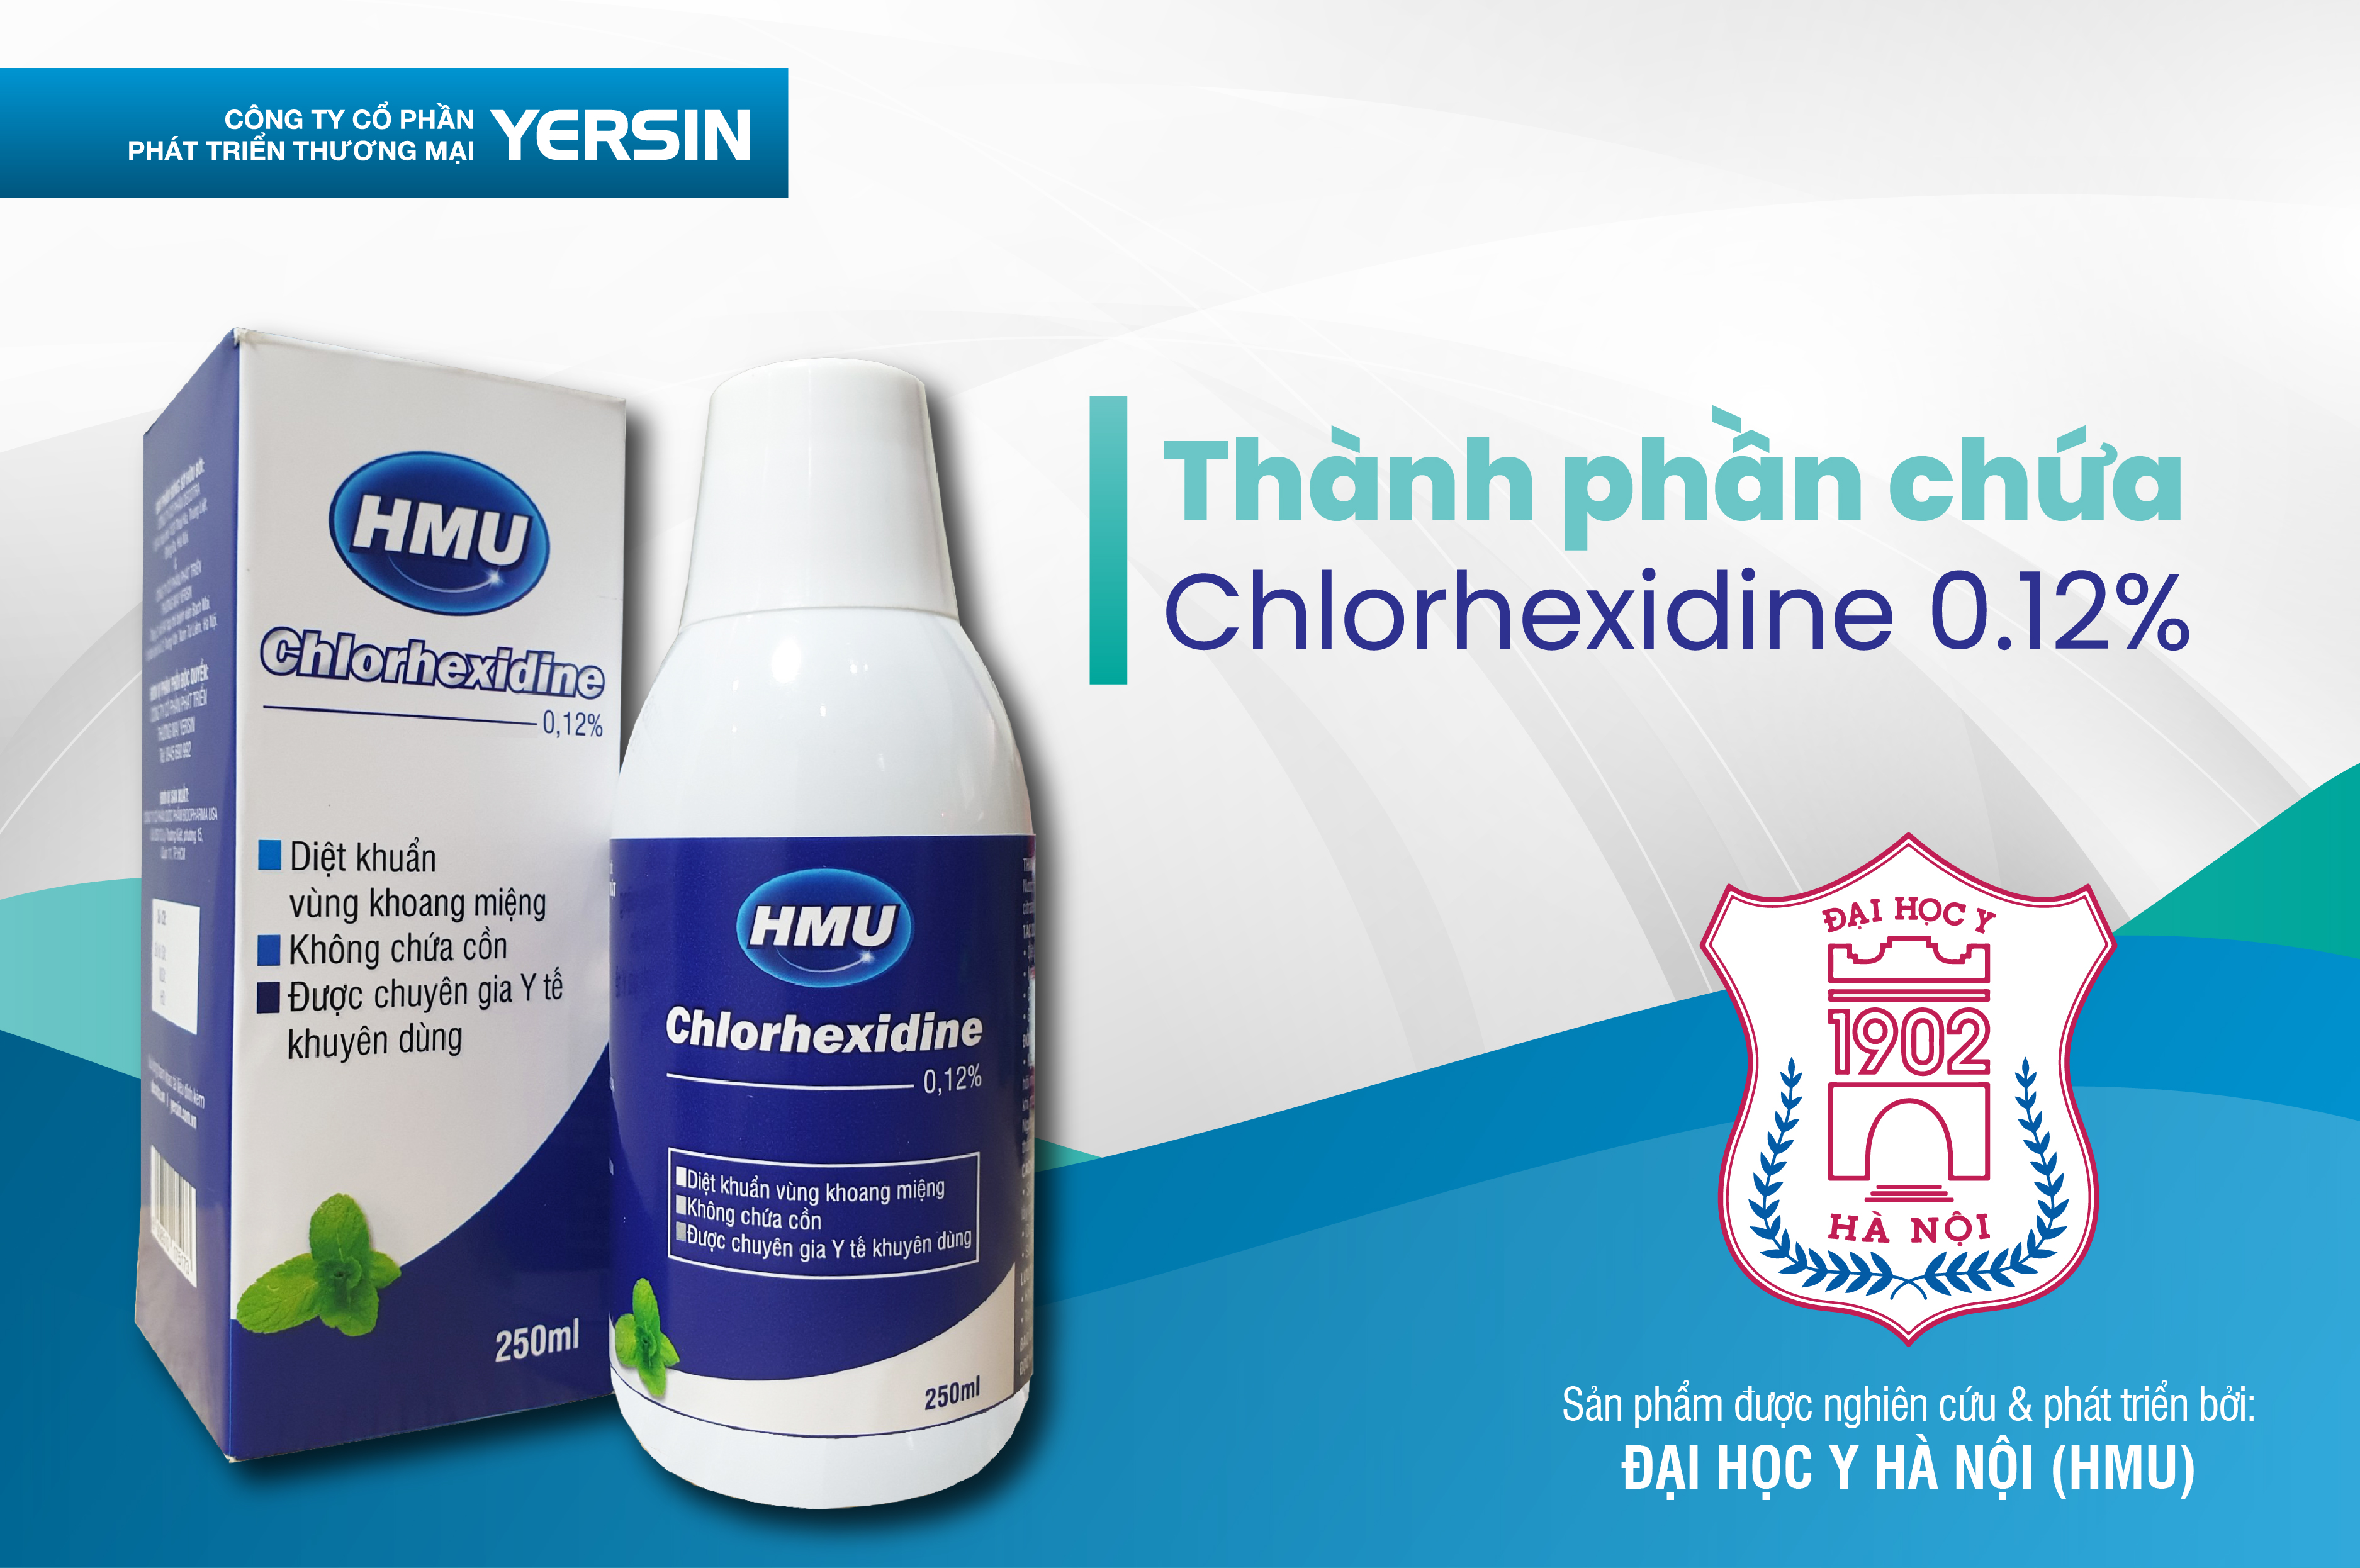 Quy cách đóng gói của nước súc miệng HMU Chlorhexidine 0.12% là như thế nào?
